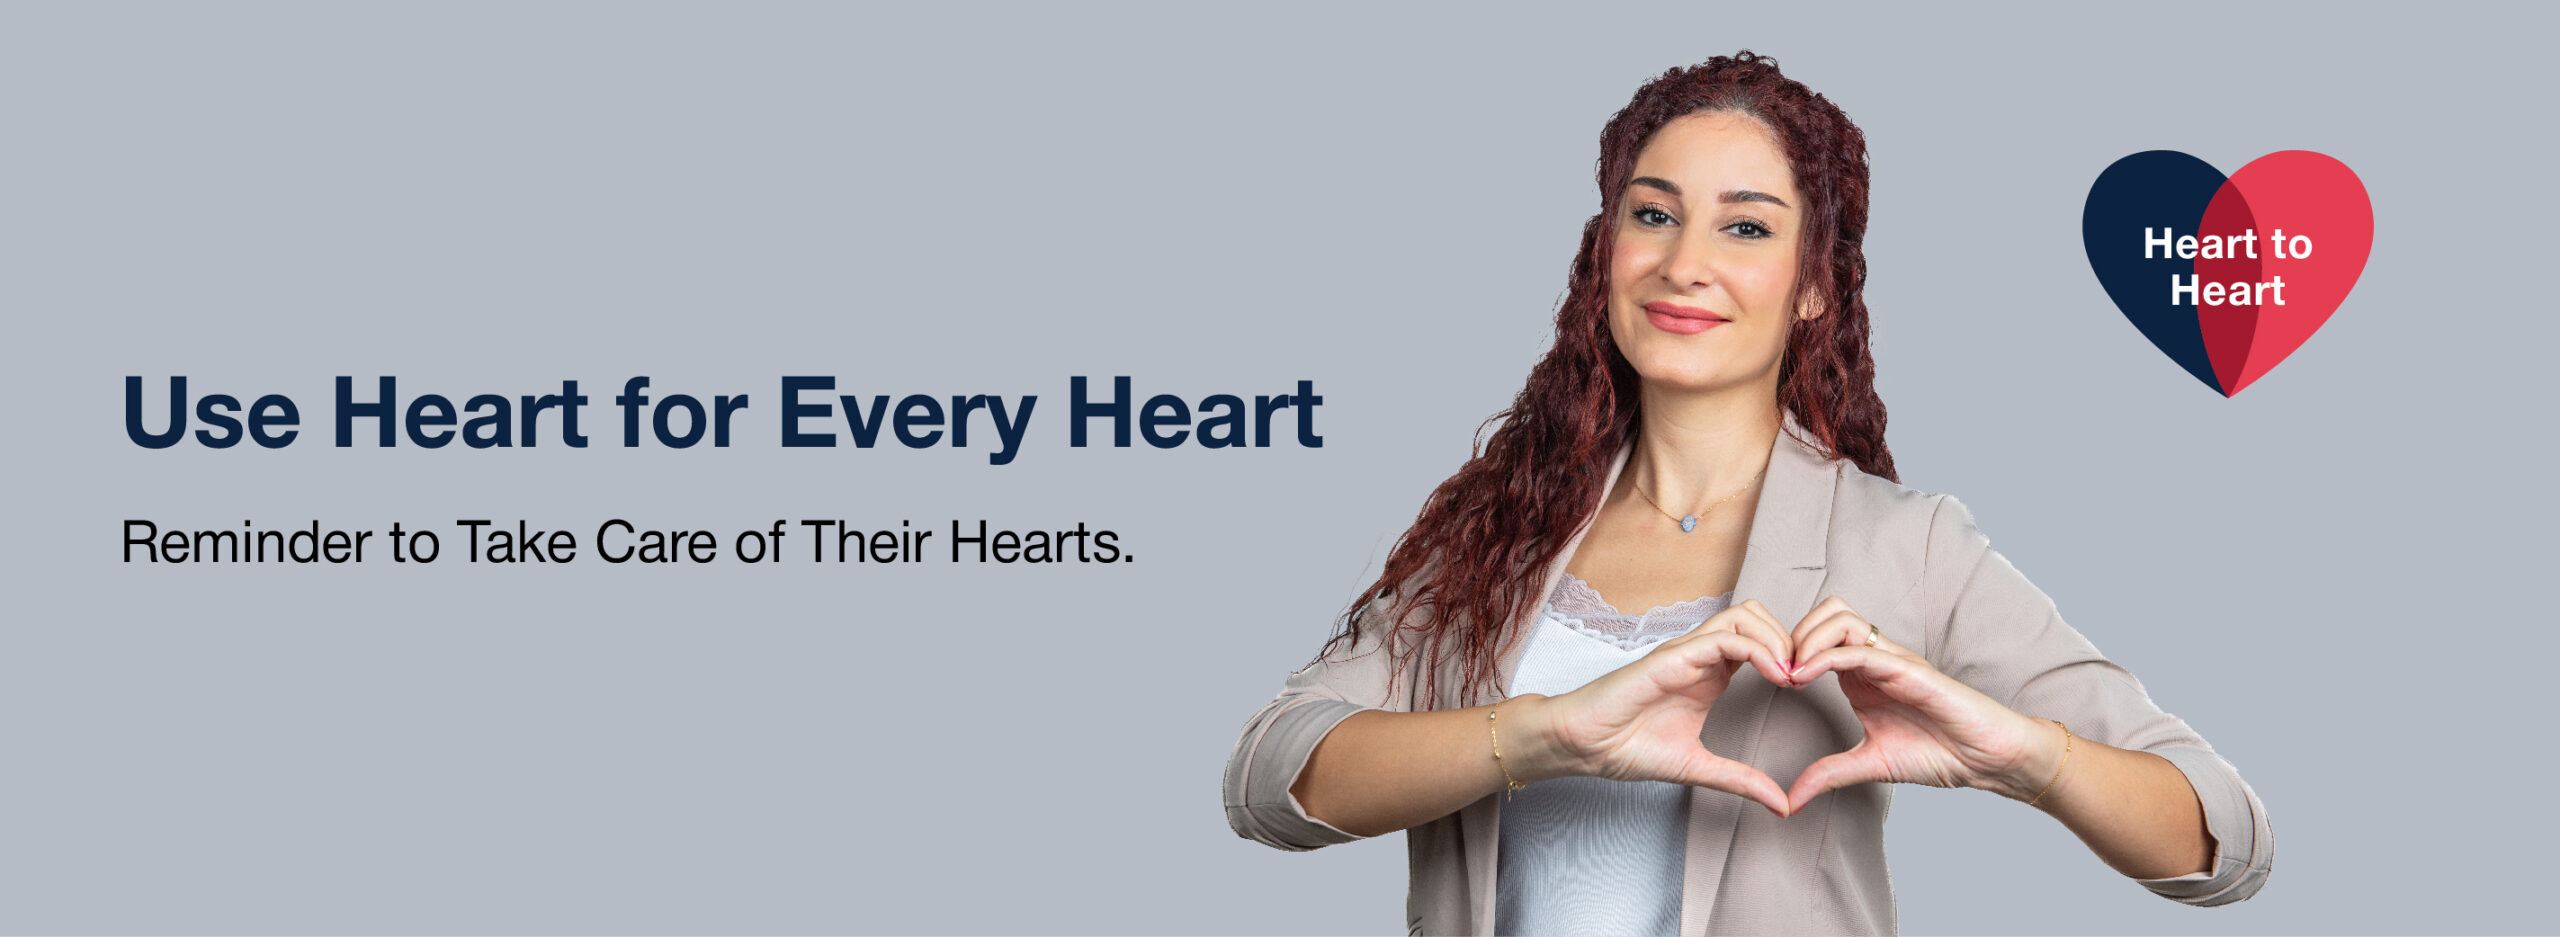 Heart Campaign